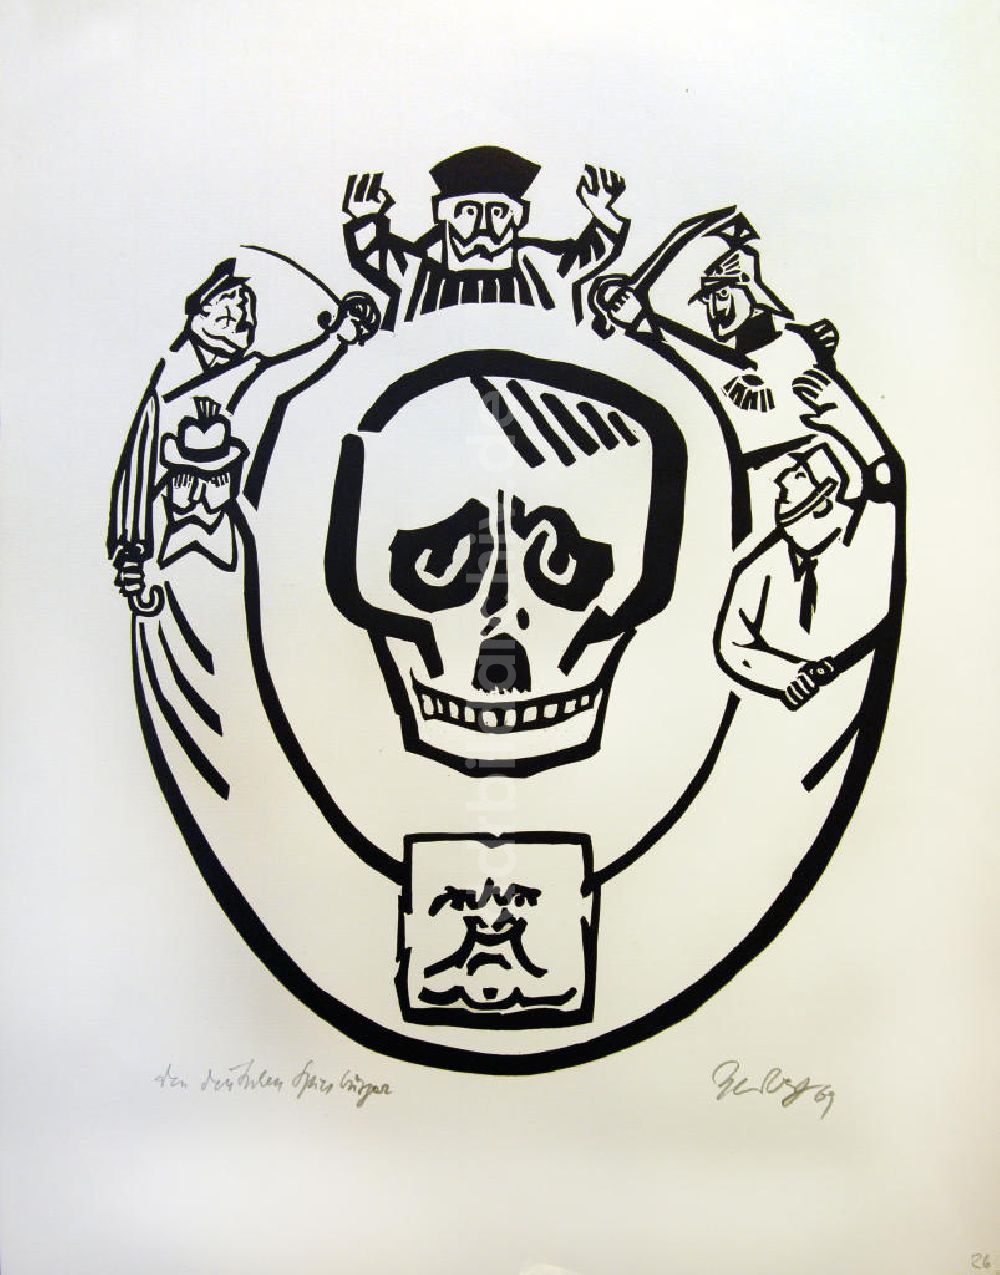 Berlin: Grafik von Herbert Sandberg Motiv 27 aus dem Zyklus Bilder zum Kommunistischen Manifest aus dem Jahr 1969